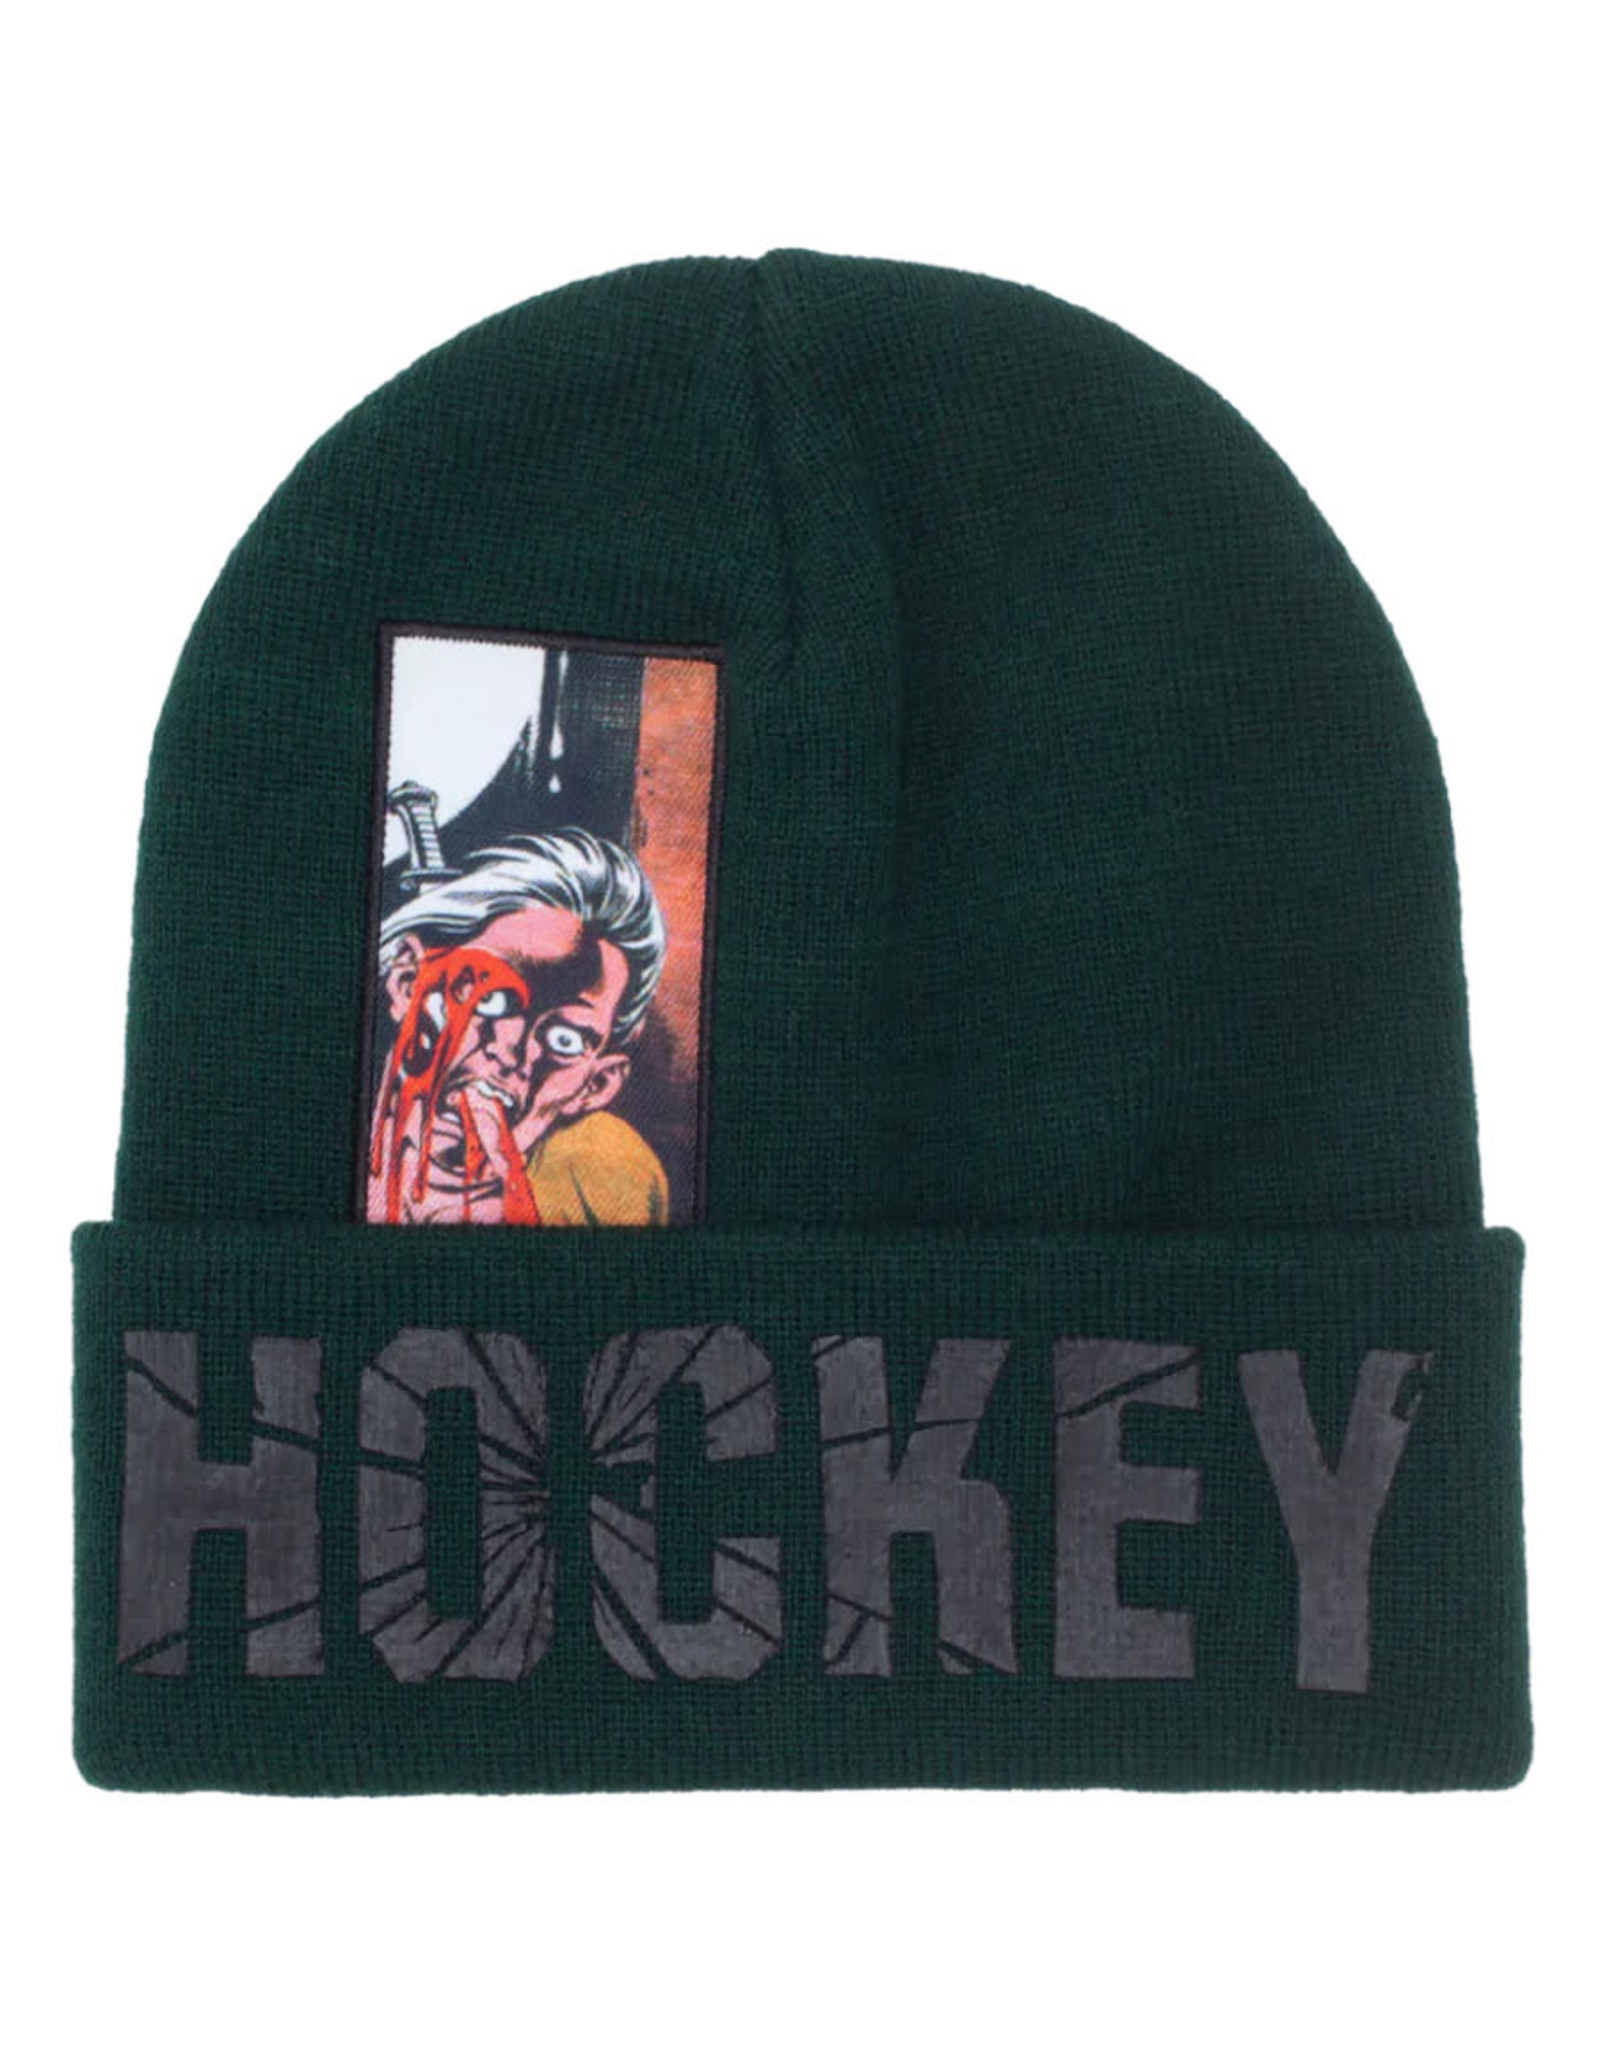 Hockey Hockey Beanie Sikmura Cuff (Army Green)